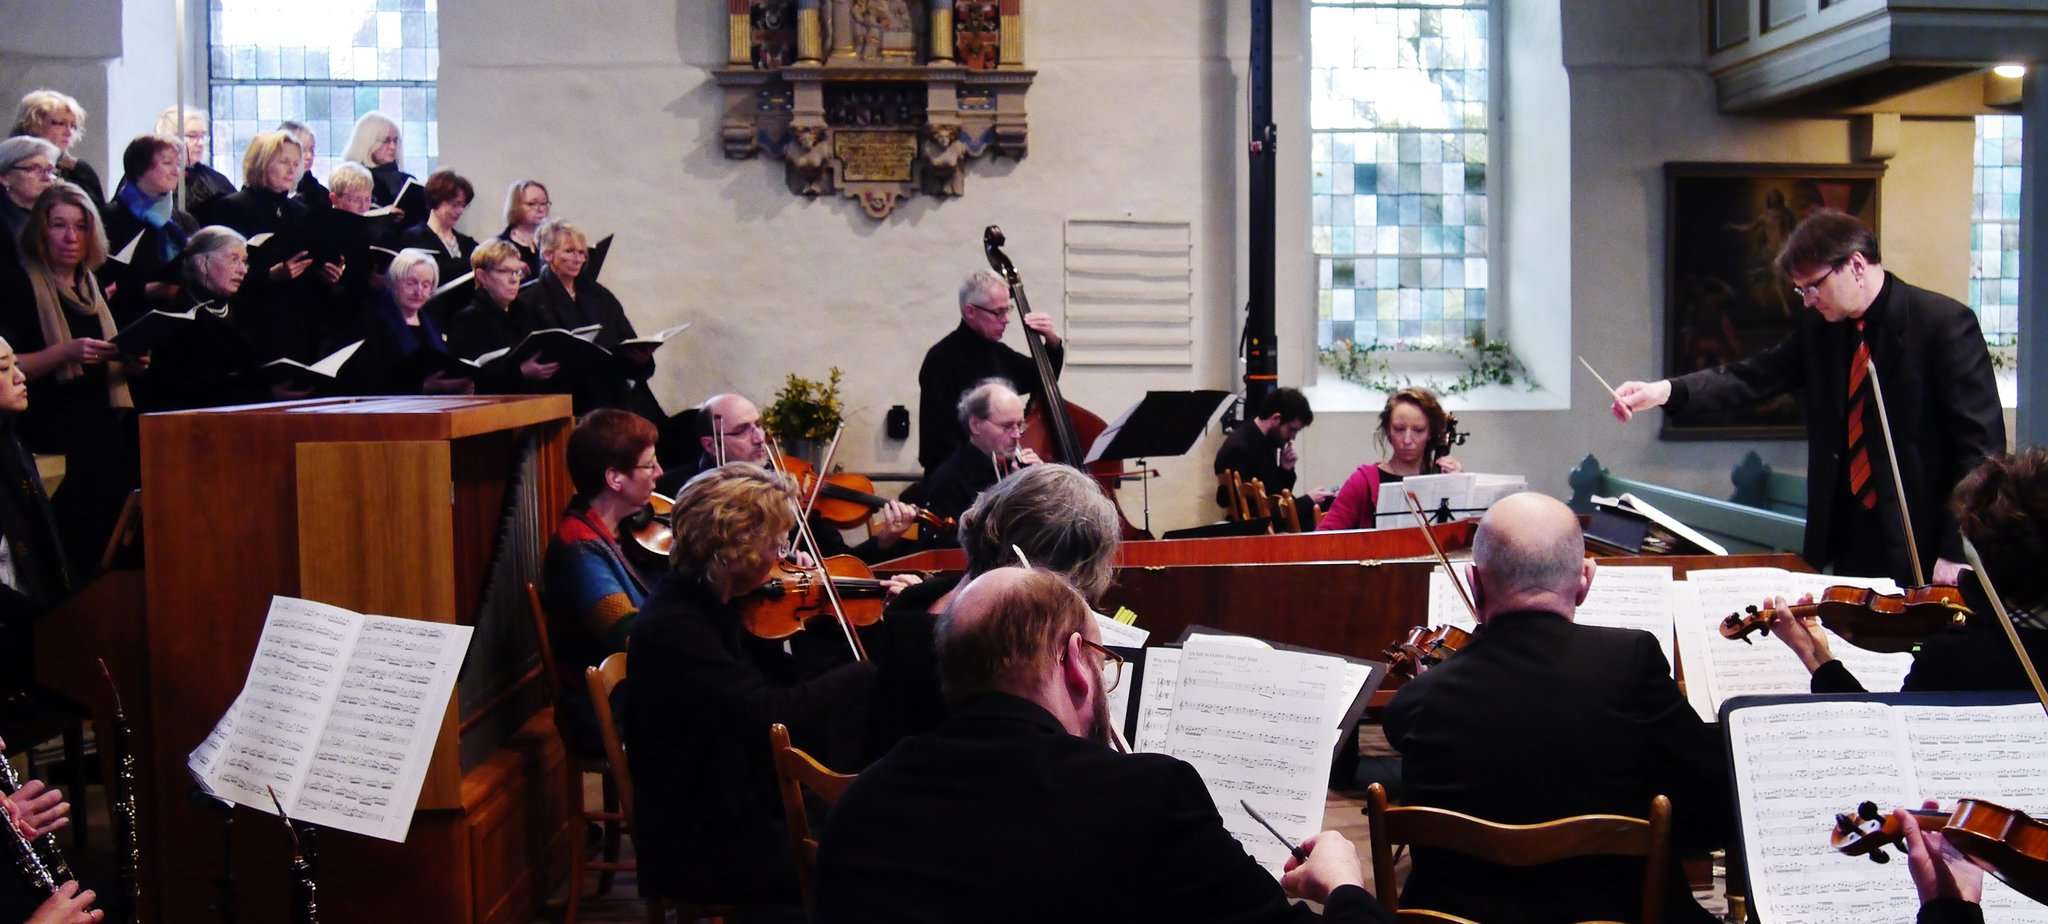 Die Konzertvereinigung Wümme-Wieste feiert ein Jubiläum und lädt am Gesang Interessierte zum Mitmachen ein.